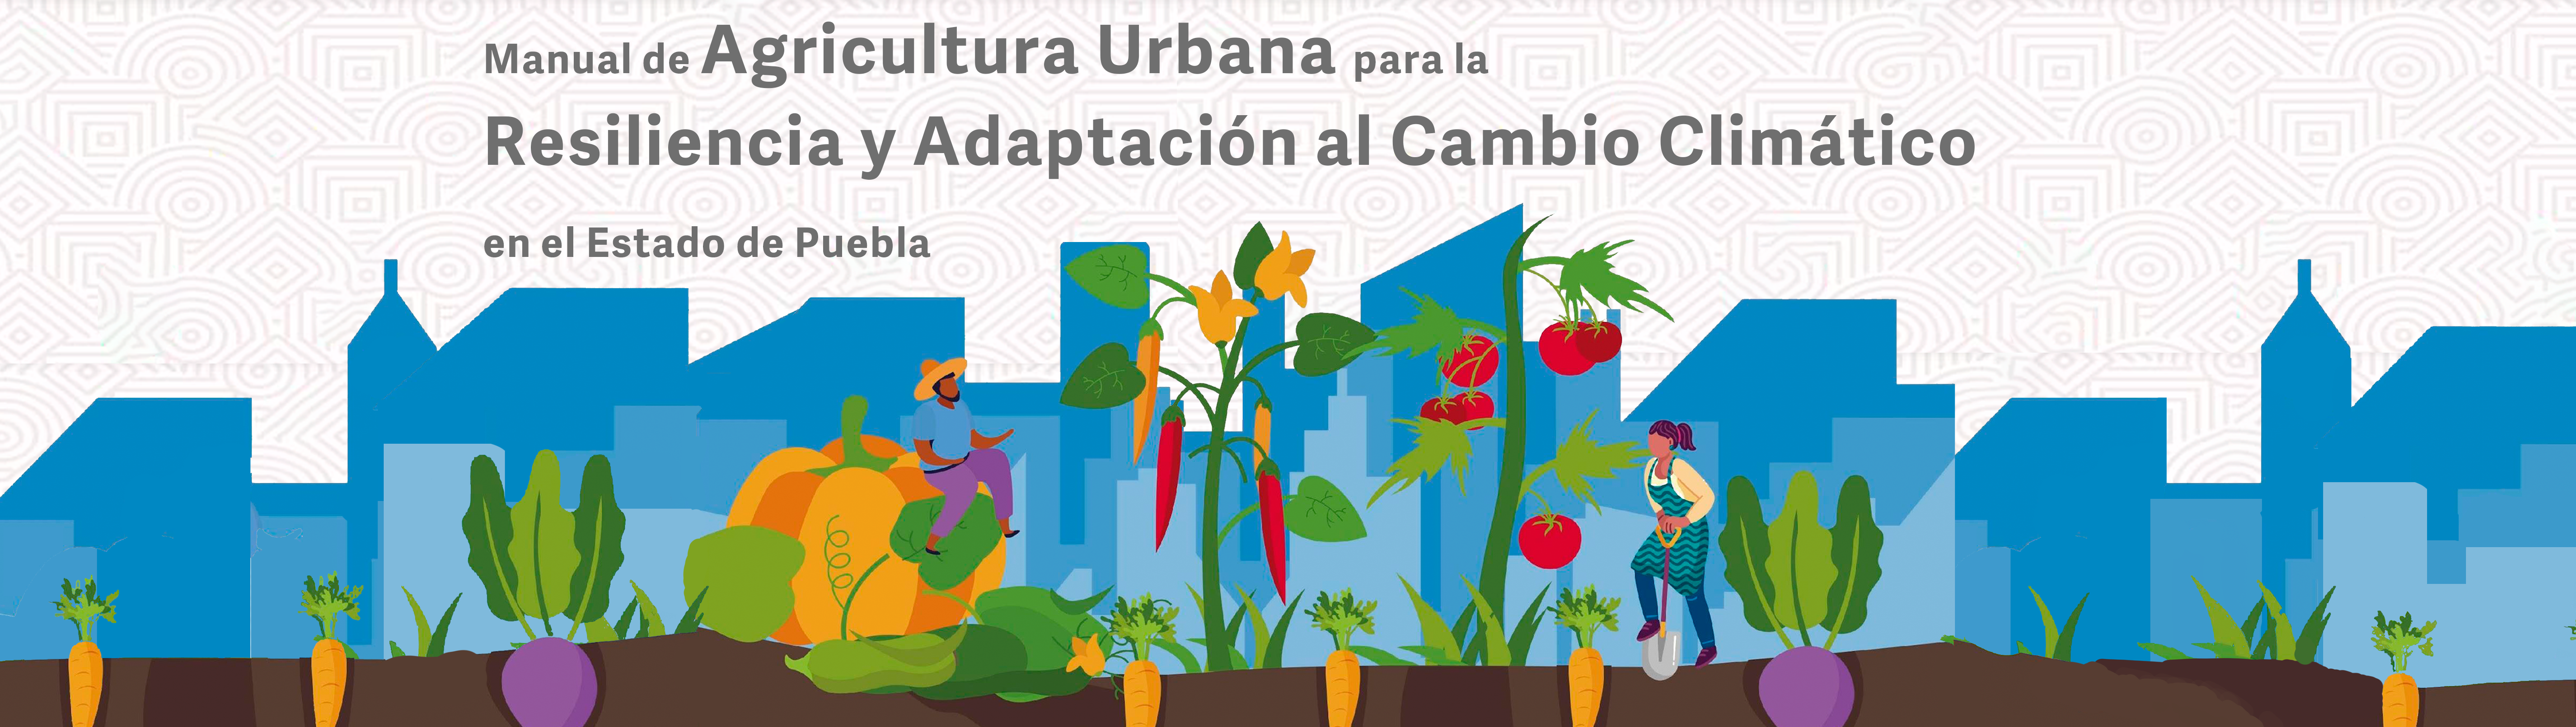 Manual de Agricultura Urbana para la Resiliencia y Adaptación al Cambio Climático en el Estado de Puebla